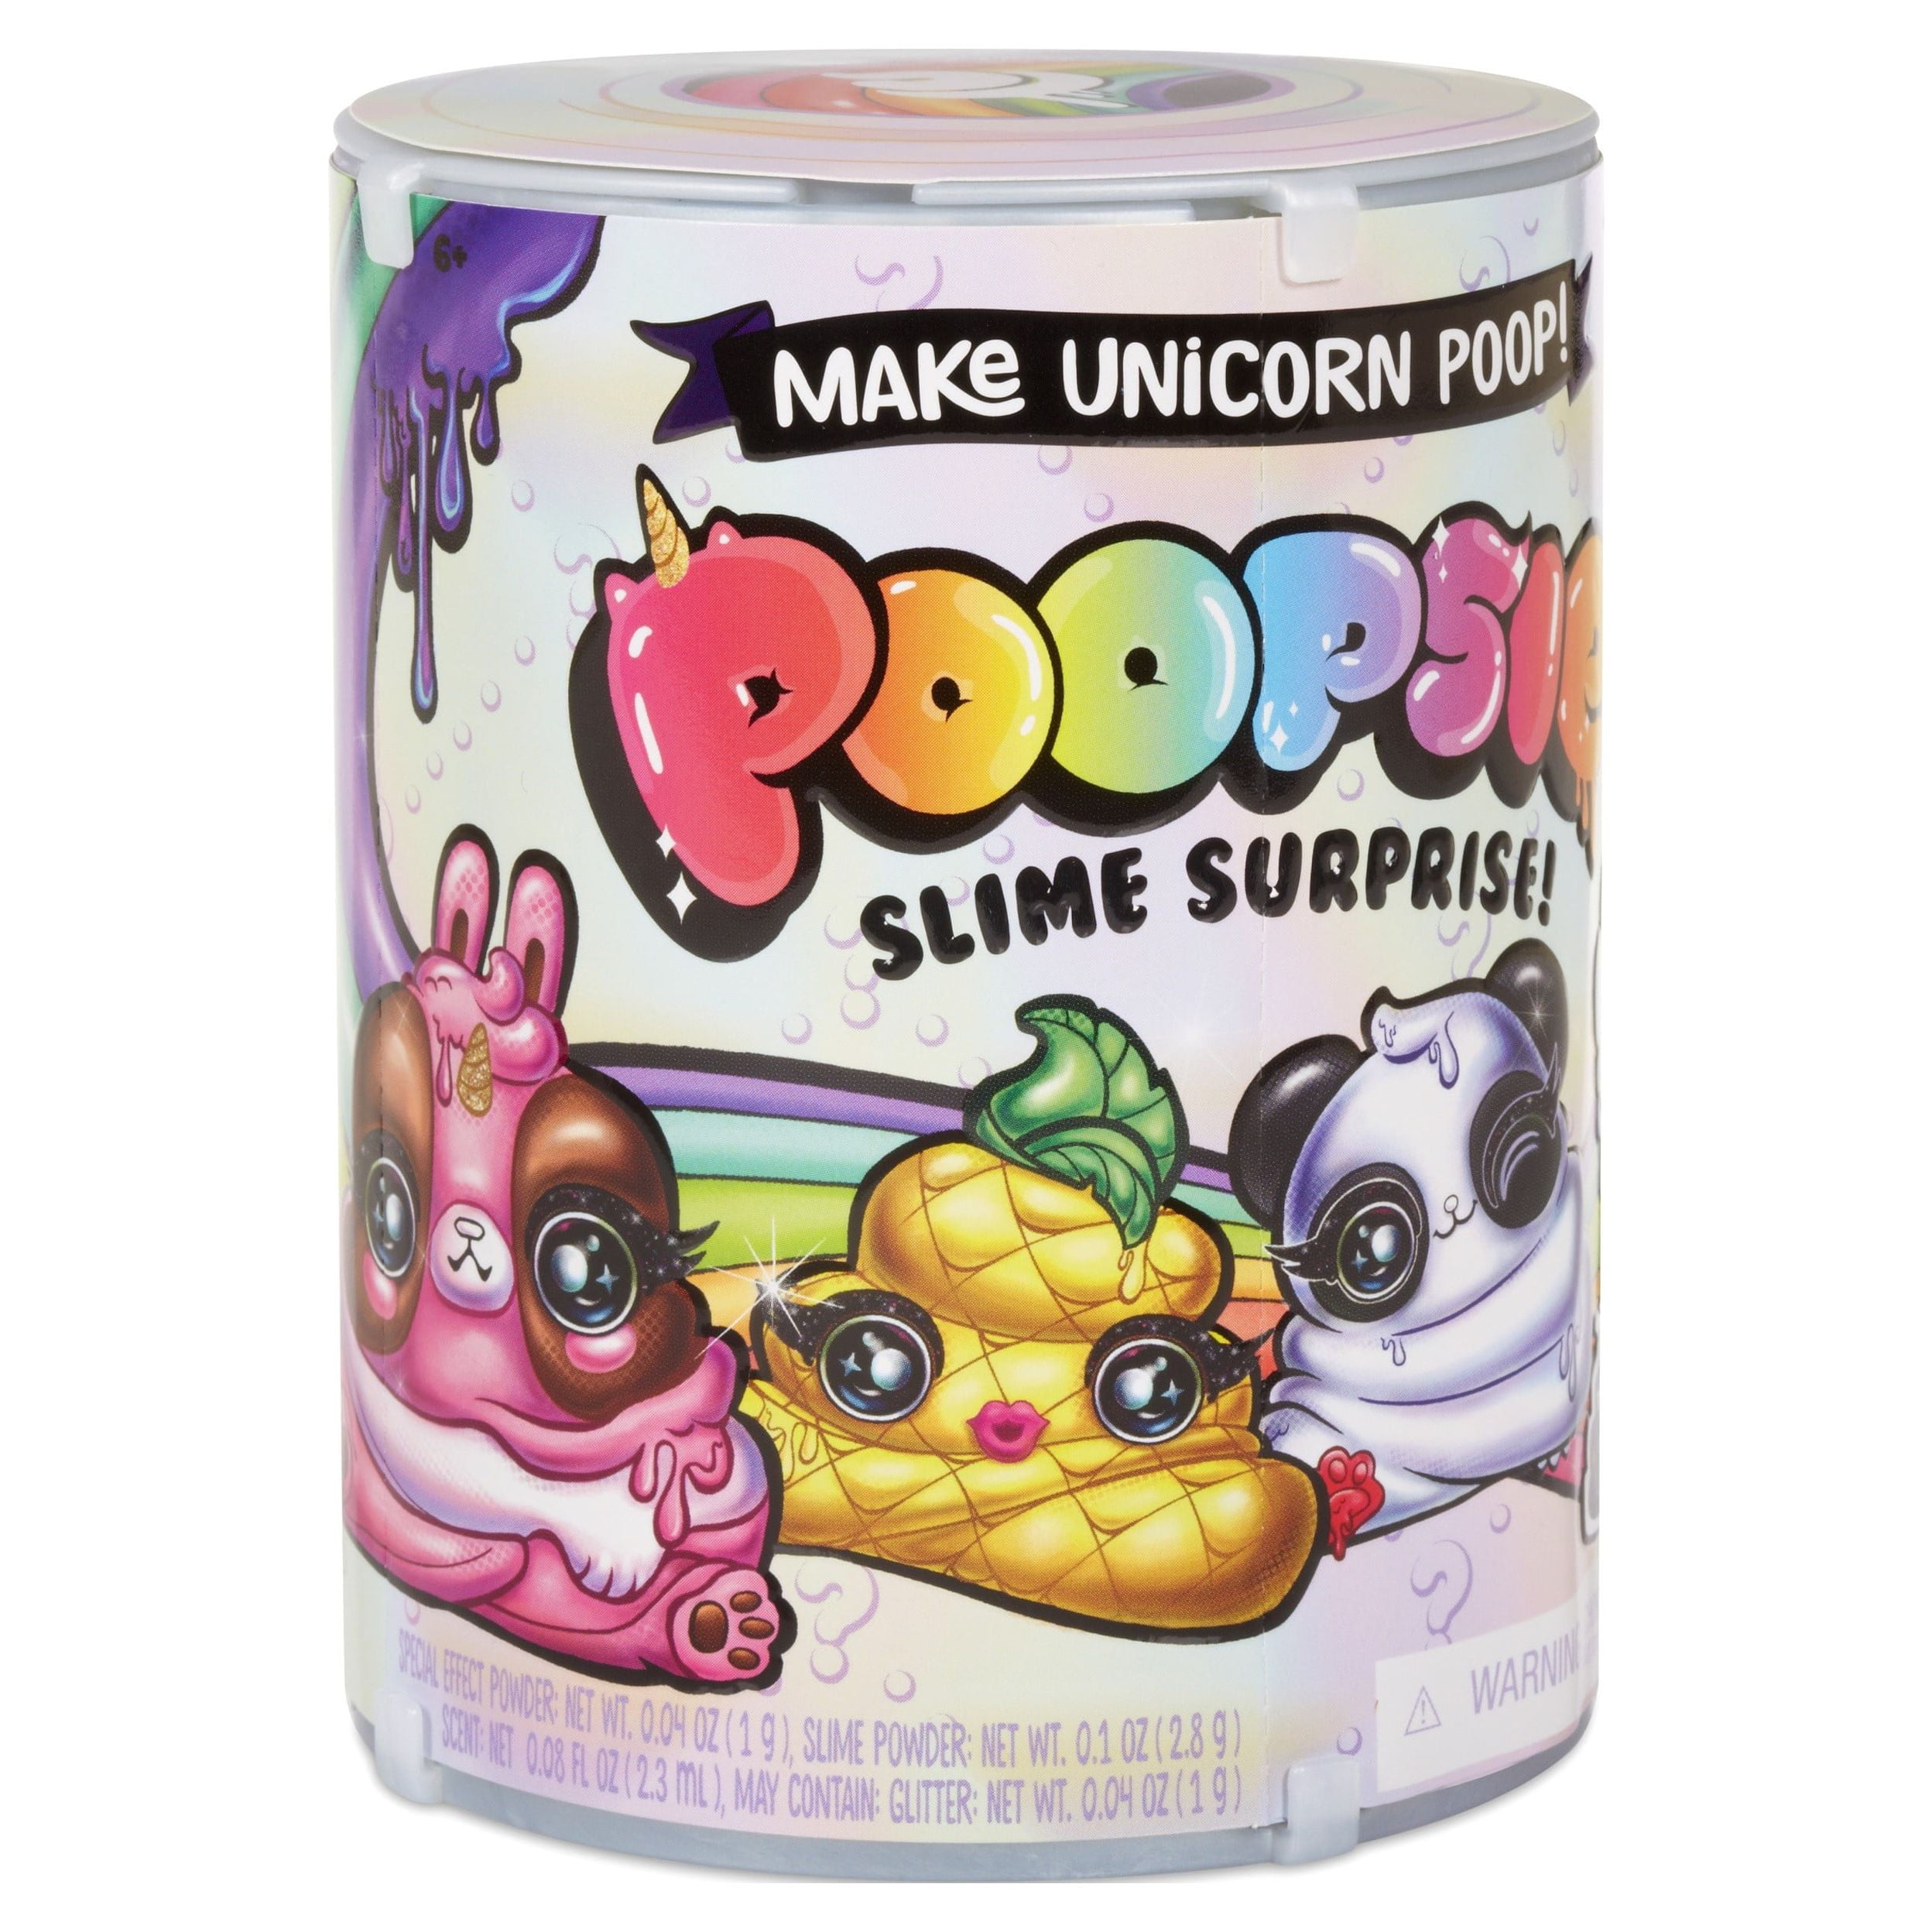 Poopsie Slime Surprise Poop Pack Series 1-1